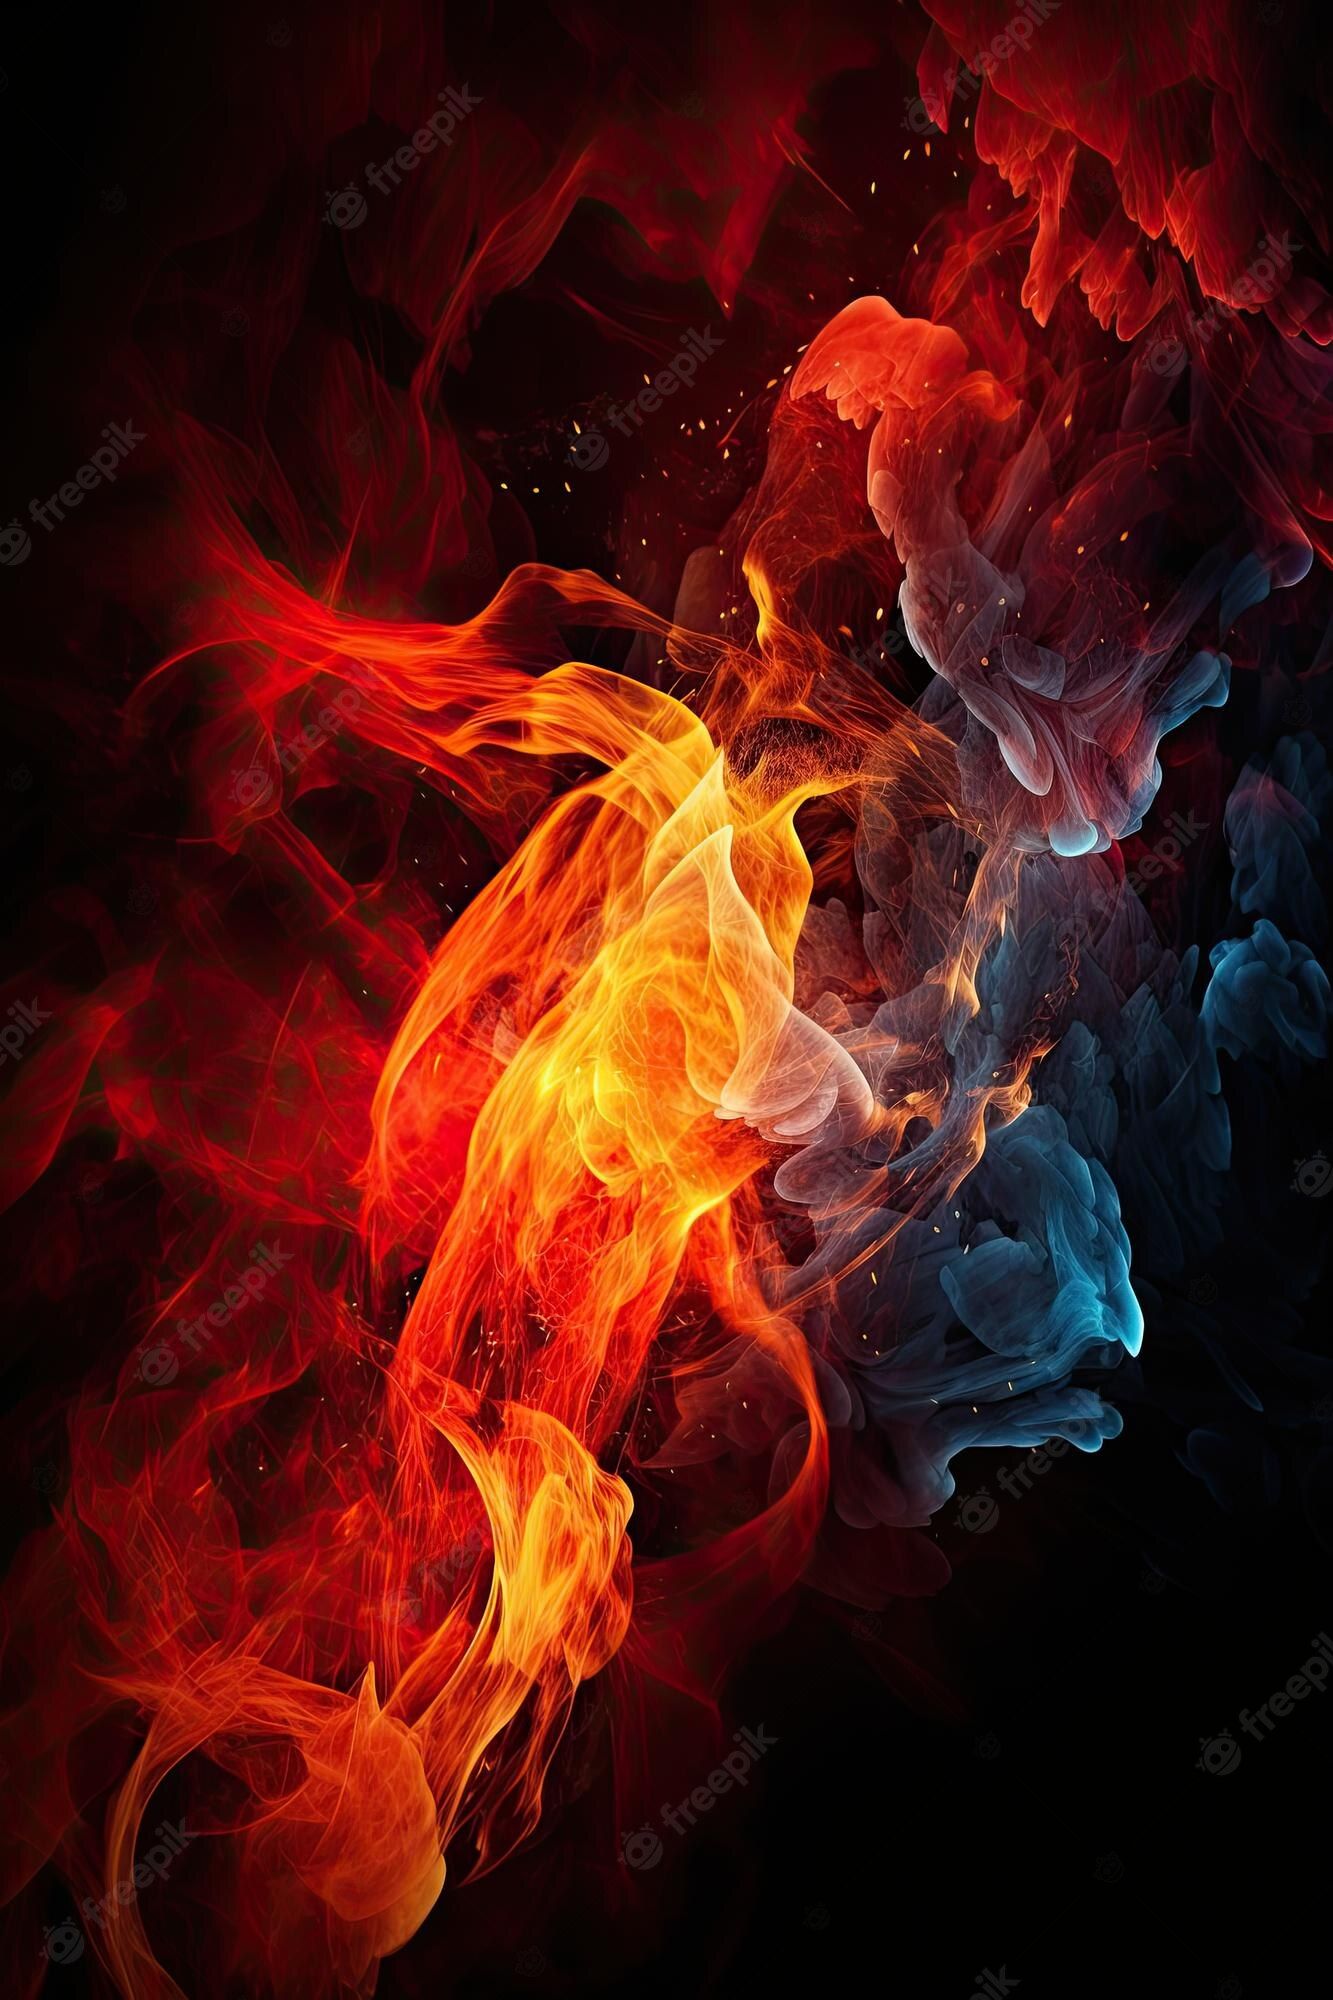  Feuer Und Eis Hintergrundbild 1333x2000. Feuer Und Eis Hintergrundbilder, Die Hd Hintergrundbilder Sind